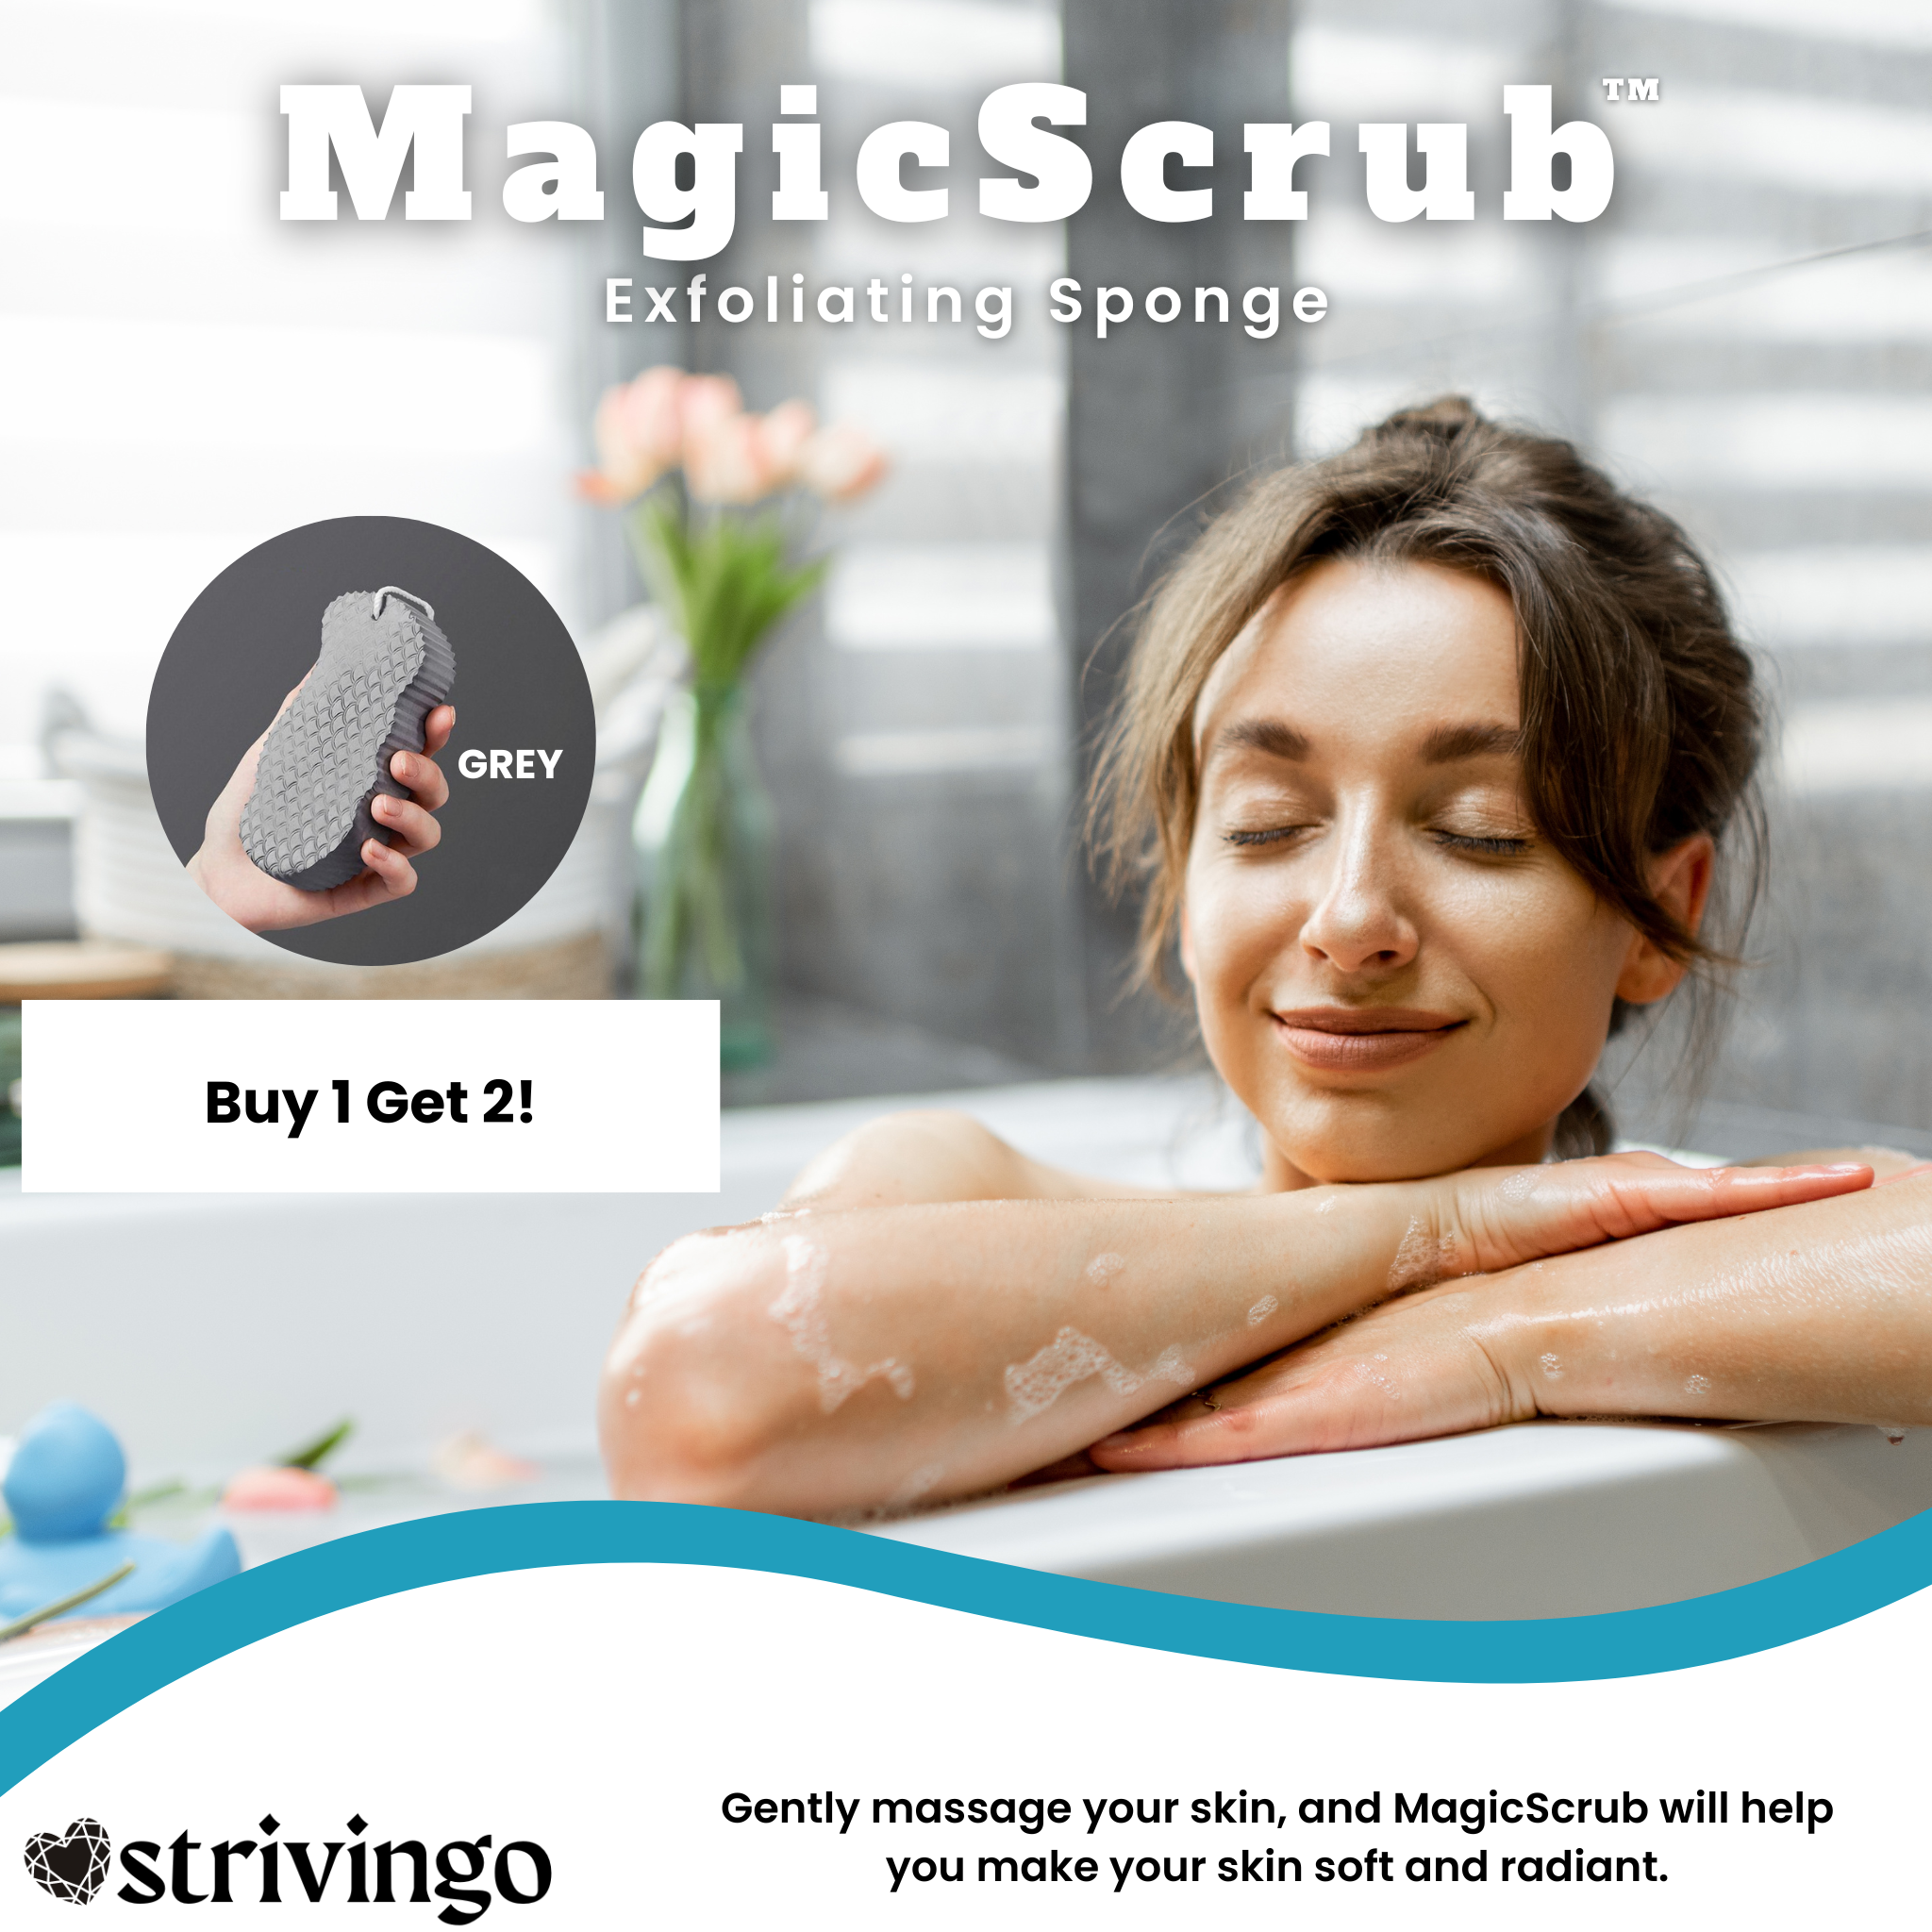 BUY 1 GET 2! MagicScrub™ Exfoliating Sponge